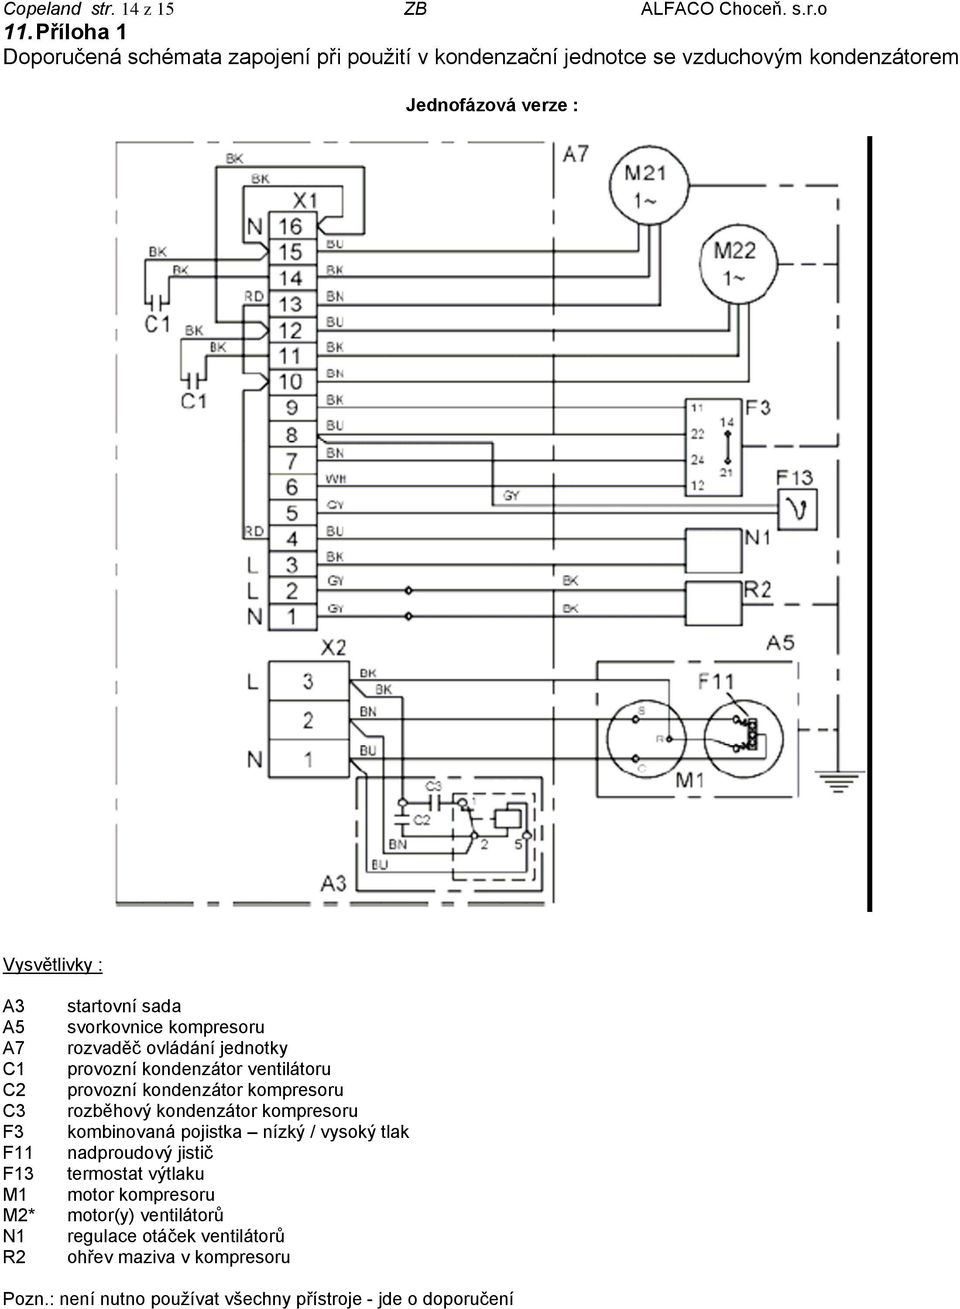 A5 svorkovnice kompresoru A7 rozvaděč ovládání jednotky C1 provozní kondenzátor ventilátoru C2 provozní kondenzátor kompresoru C3 rozběhový kondenzátor